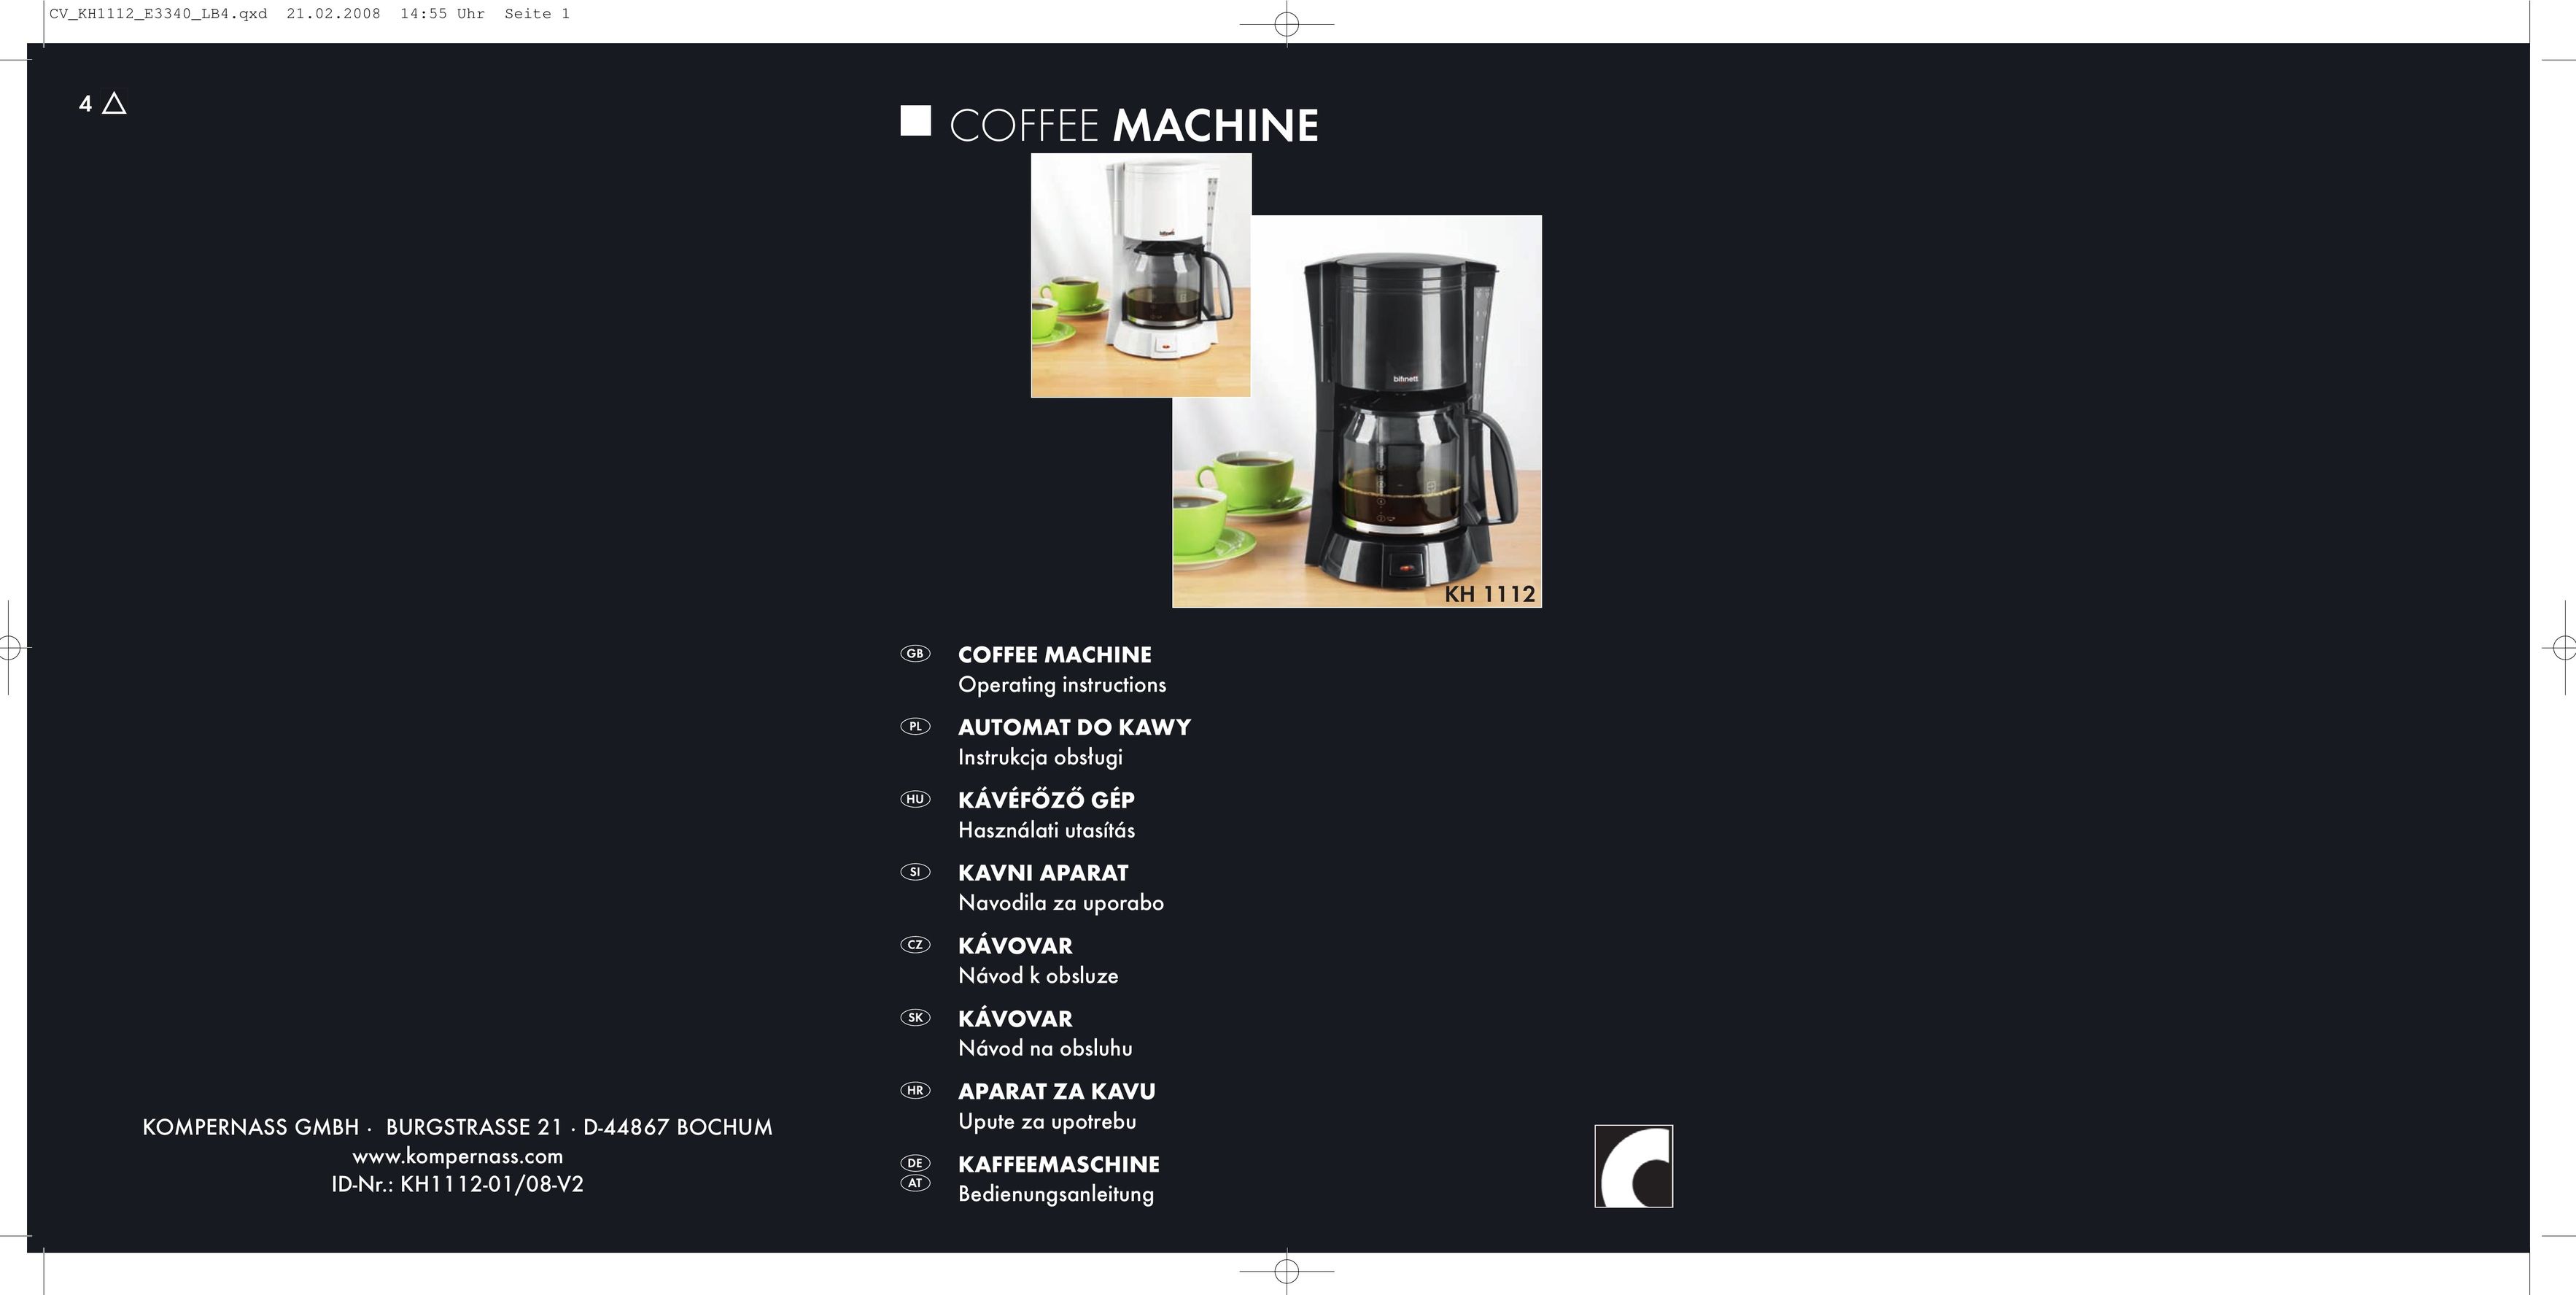 Kompernass KH 1112 Coffeemaker User Manual